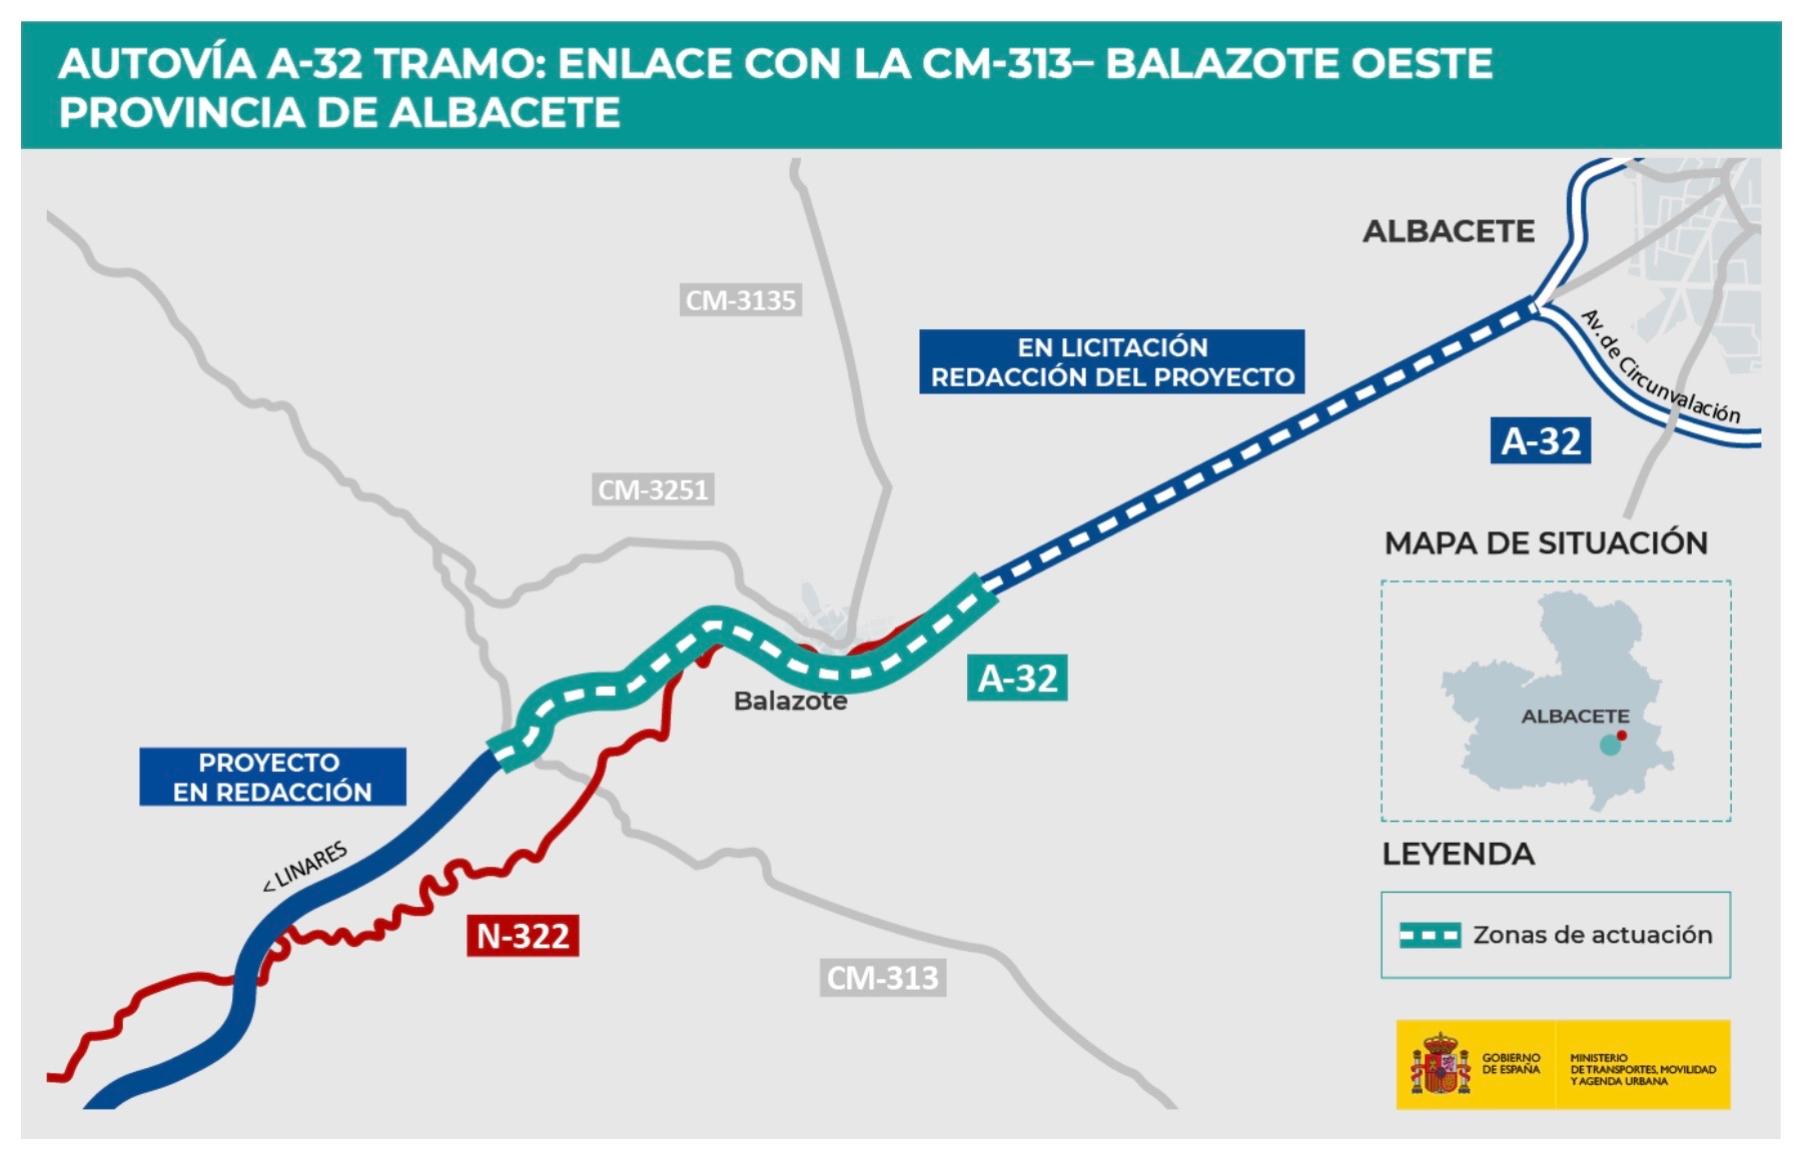 El Gobierno autoriza licitar las obras del enlace CM-313-Balazote Oeste de la autovía A-32 por más de 94 millones de euros